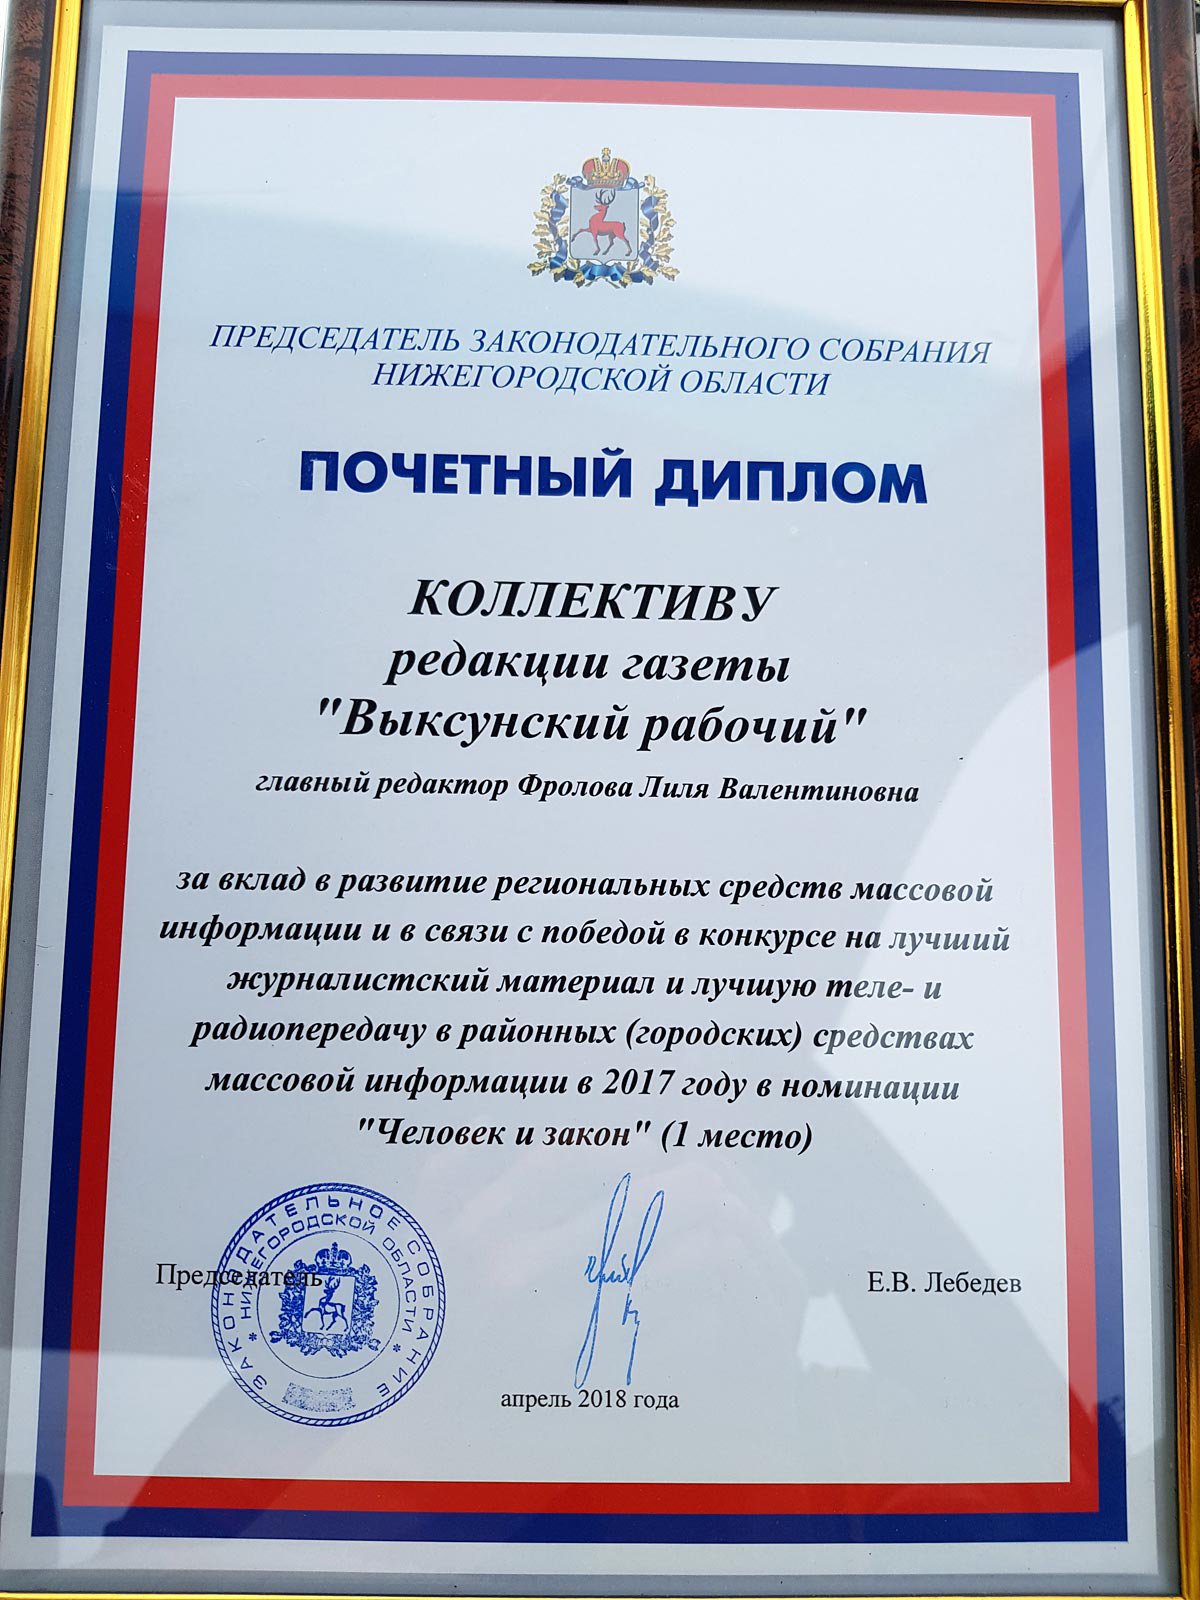 Награждение в Законодательном собрании (Нижний Новгород, 2018 г.)